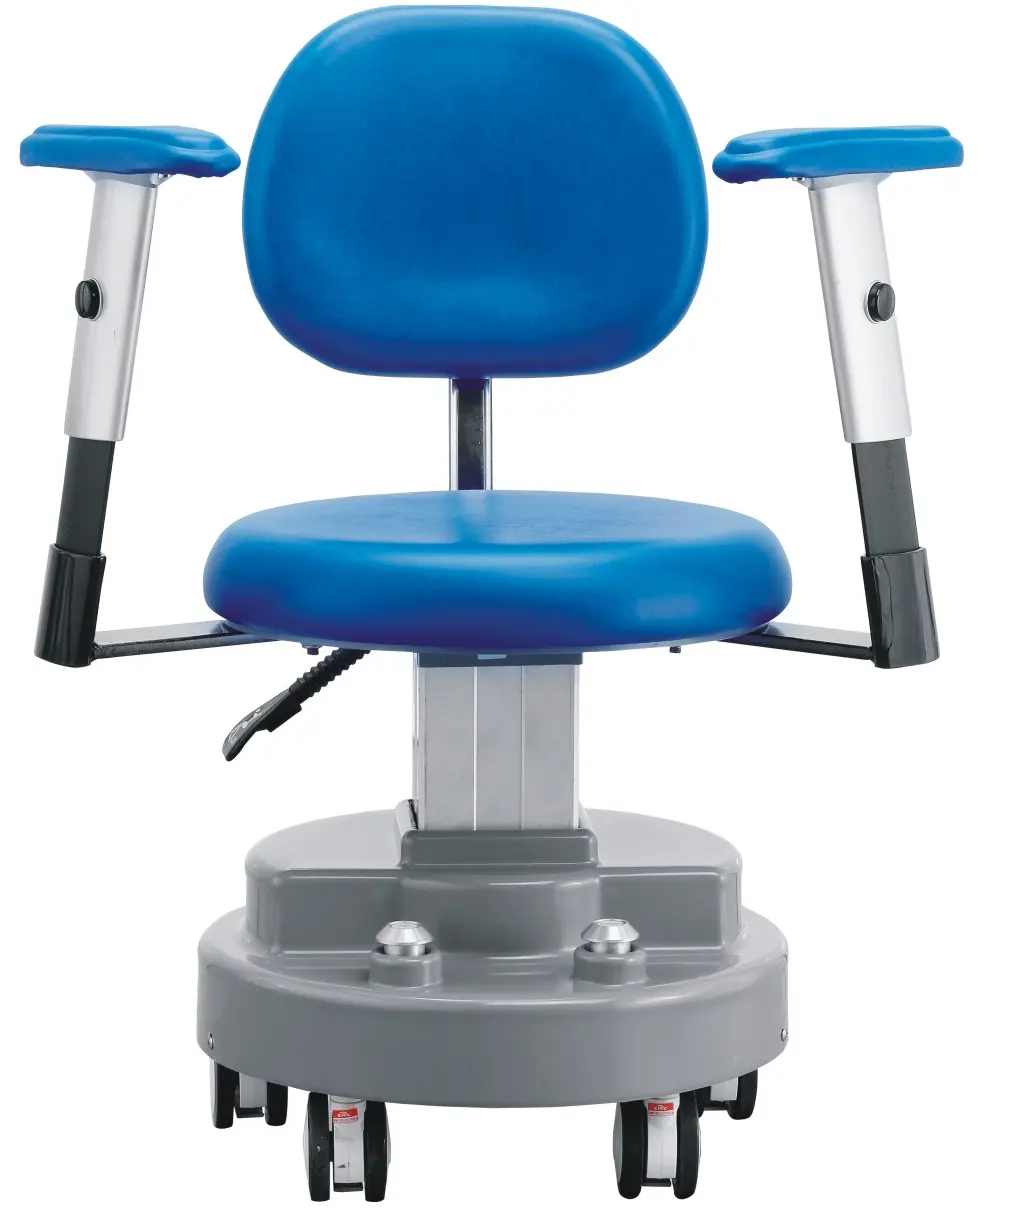 Стул хирургический/врачебный стул для использования в больничной операционной